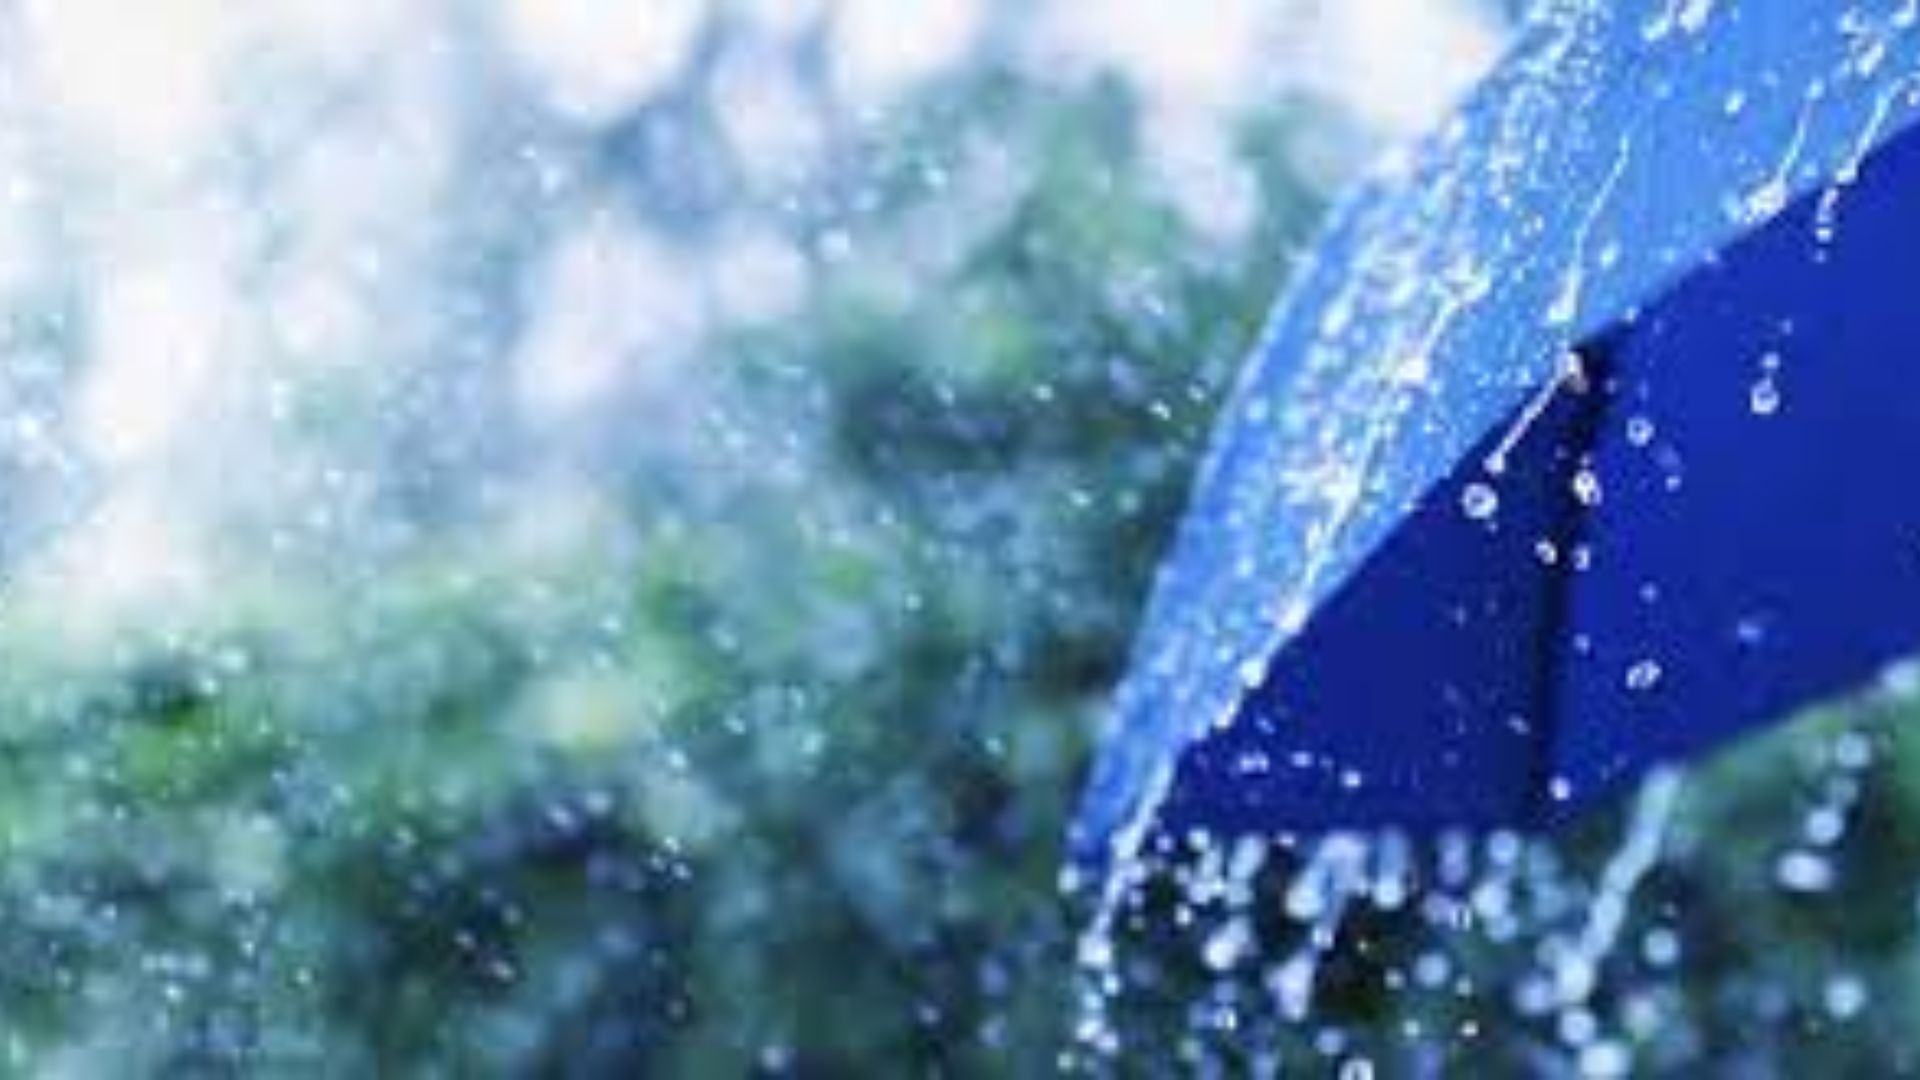 लखीमपुर खीरी: अचानक बदला मौसम का मिजाज, तेज आंधी के साथ झमाझम बारिश...छप्पर-टिनशेड उड़े 